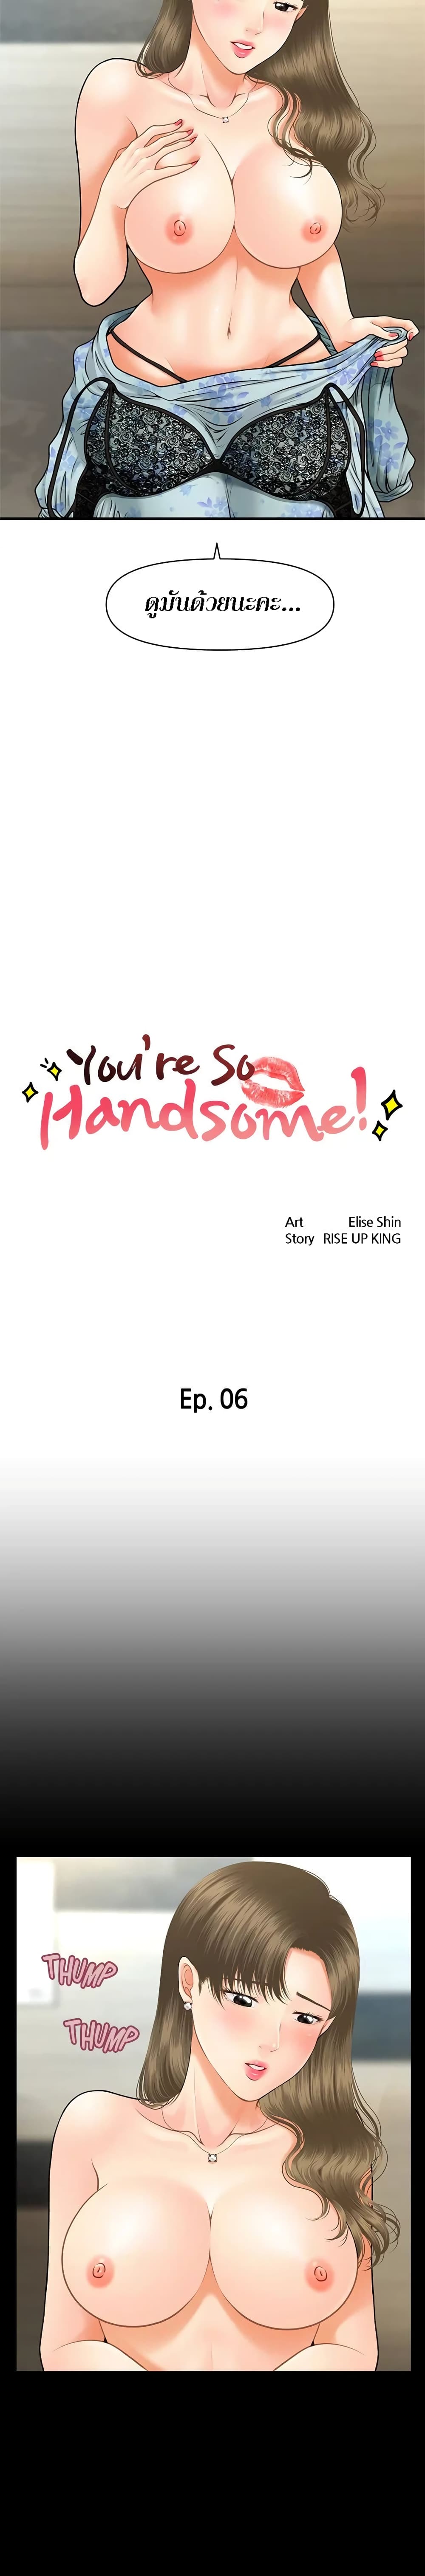 Hey, Handsome 6 02